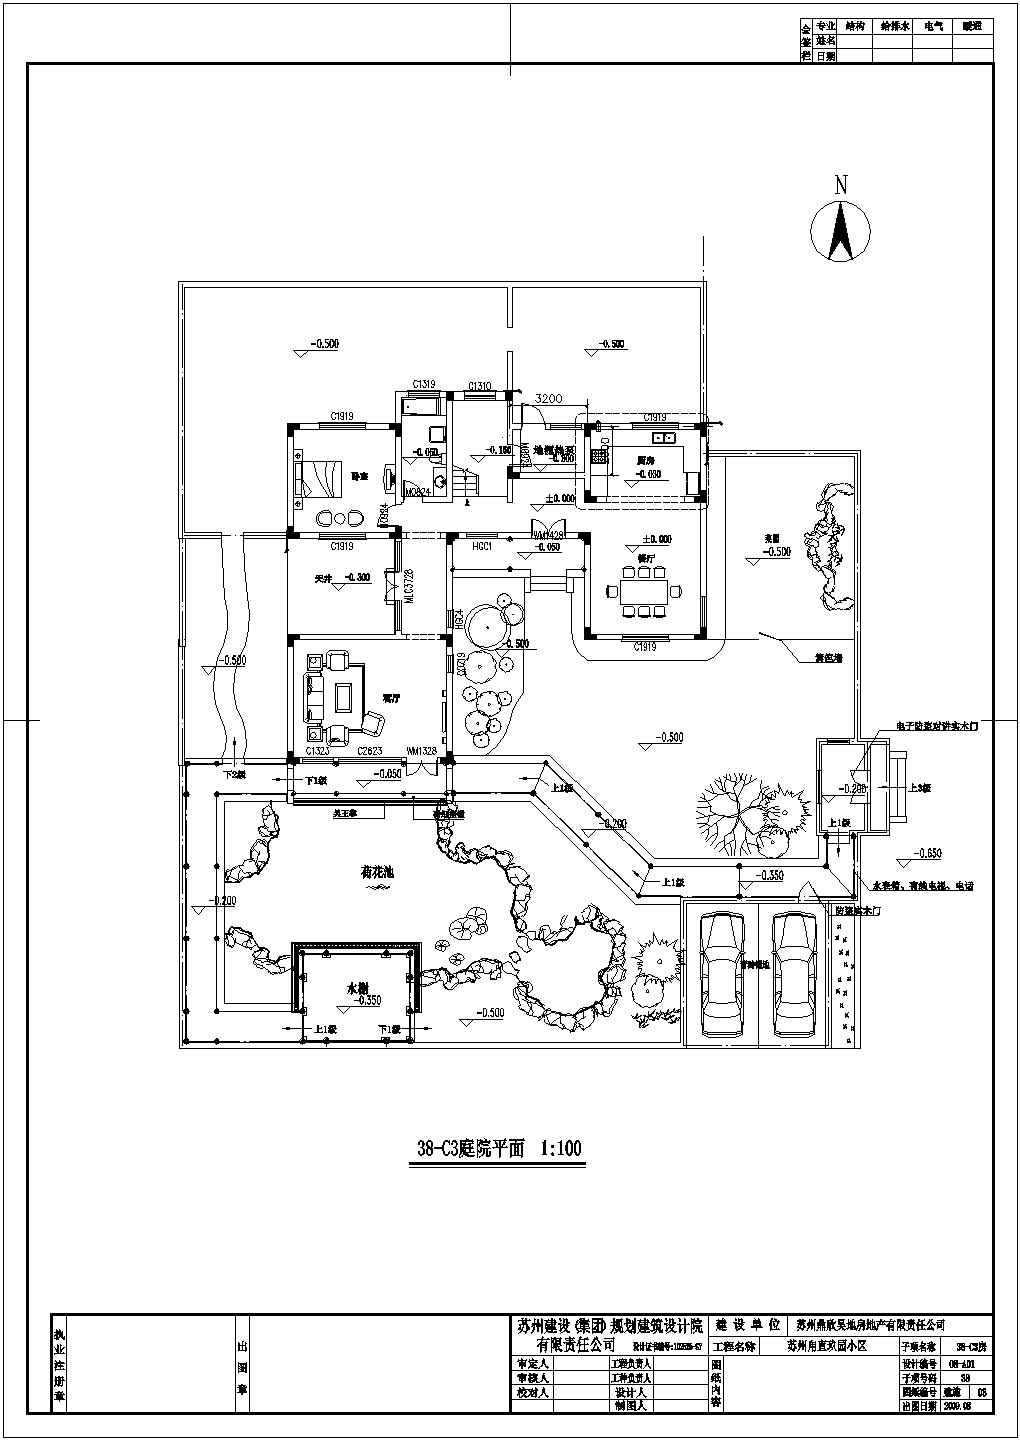 【苏州】2层中式别墅建筑施工图纸